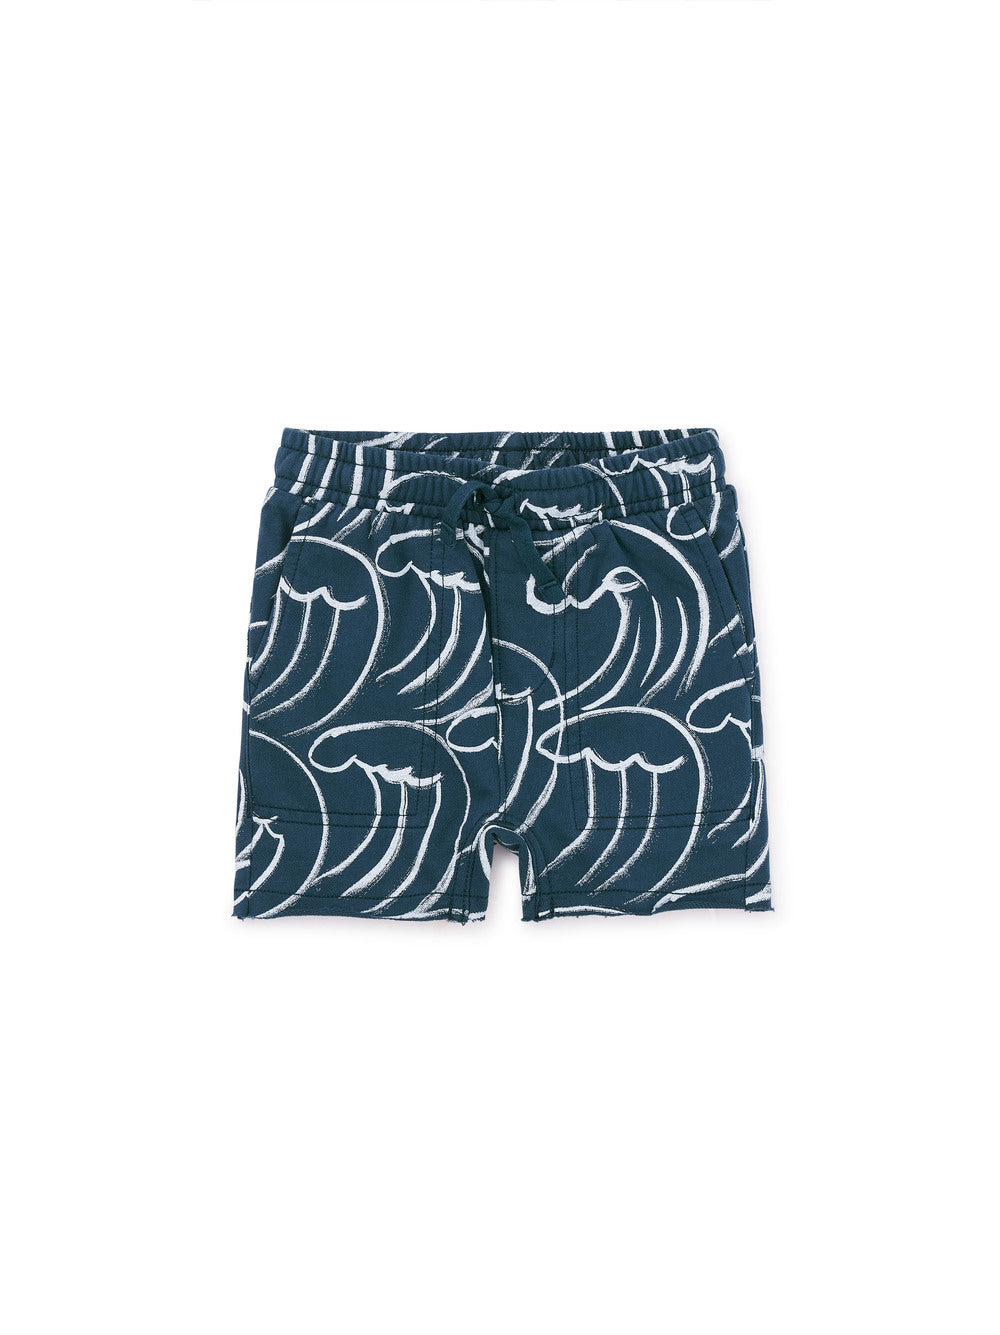 Tea Collection Printed Baby Gym Shorts - Kanagawa Waves